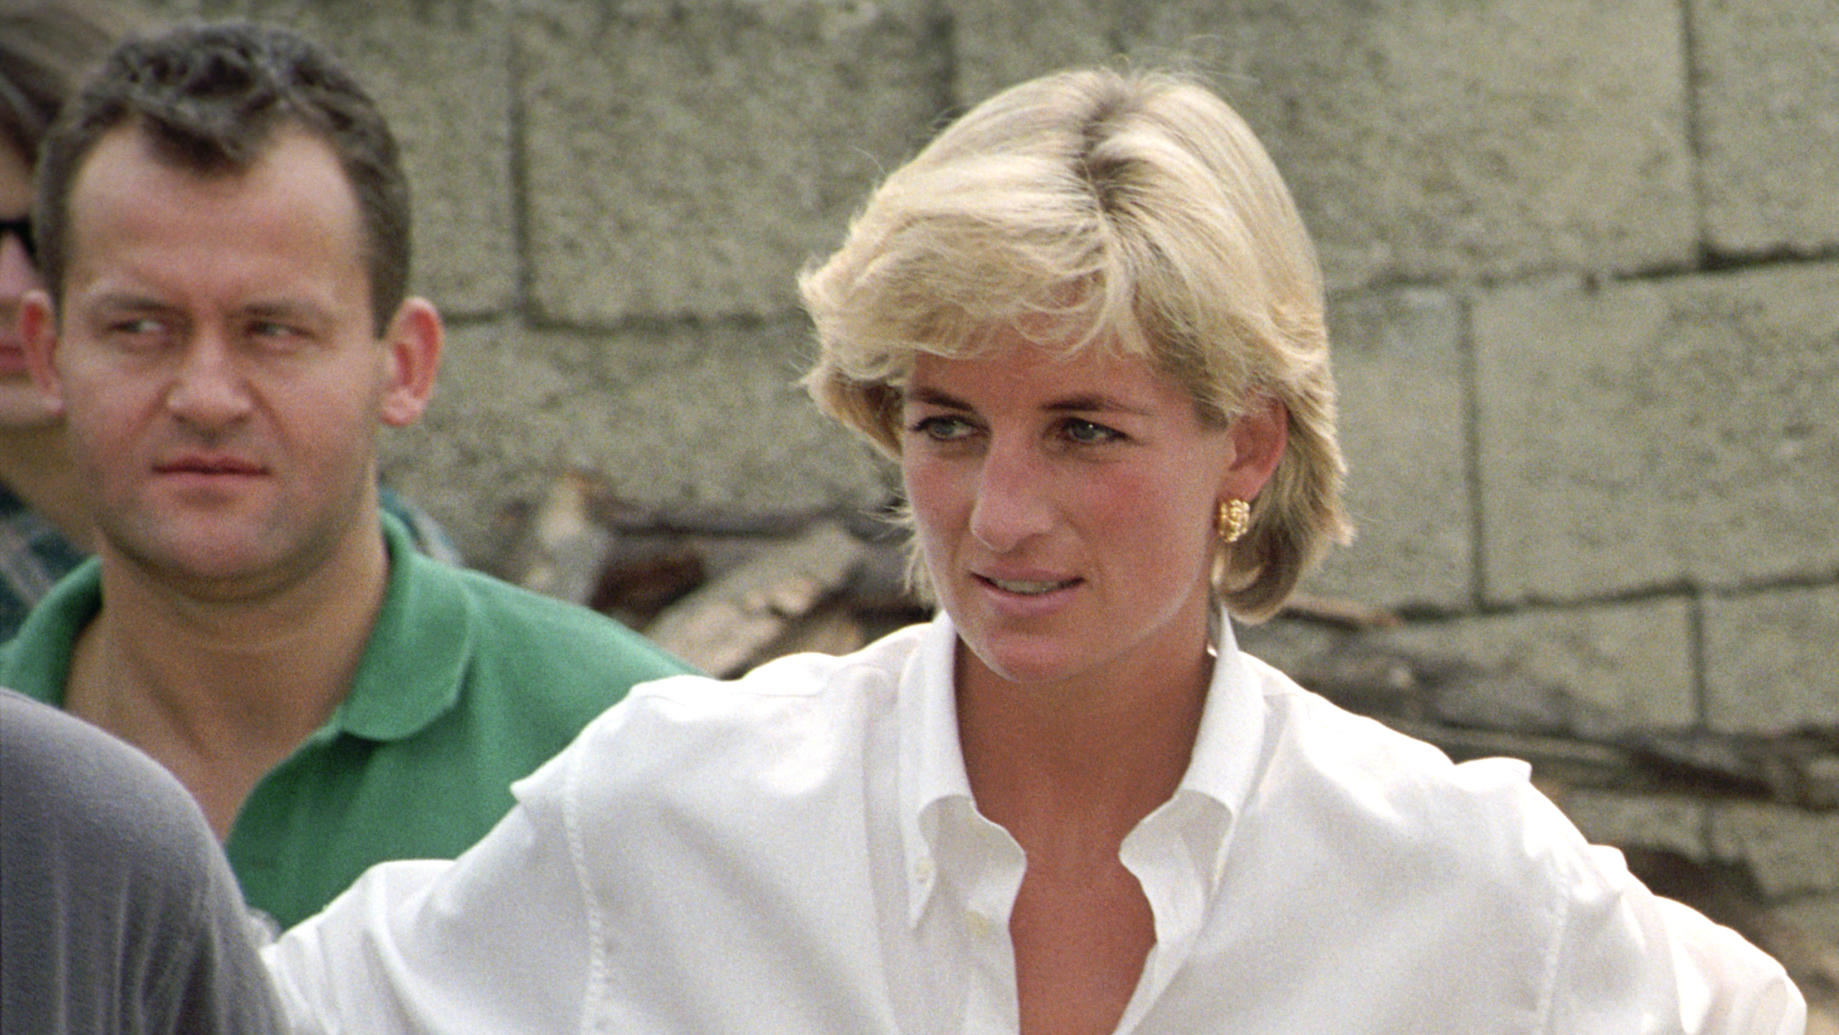 Paul Burrell arbeitete von 1987 bis 1997 für Prinzessin Diana